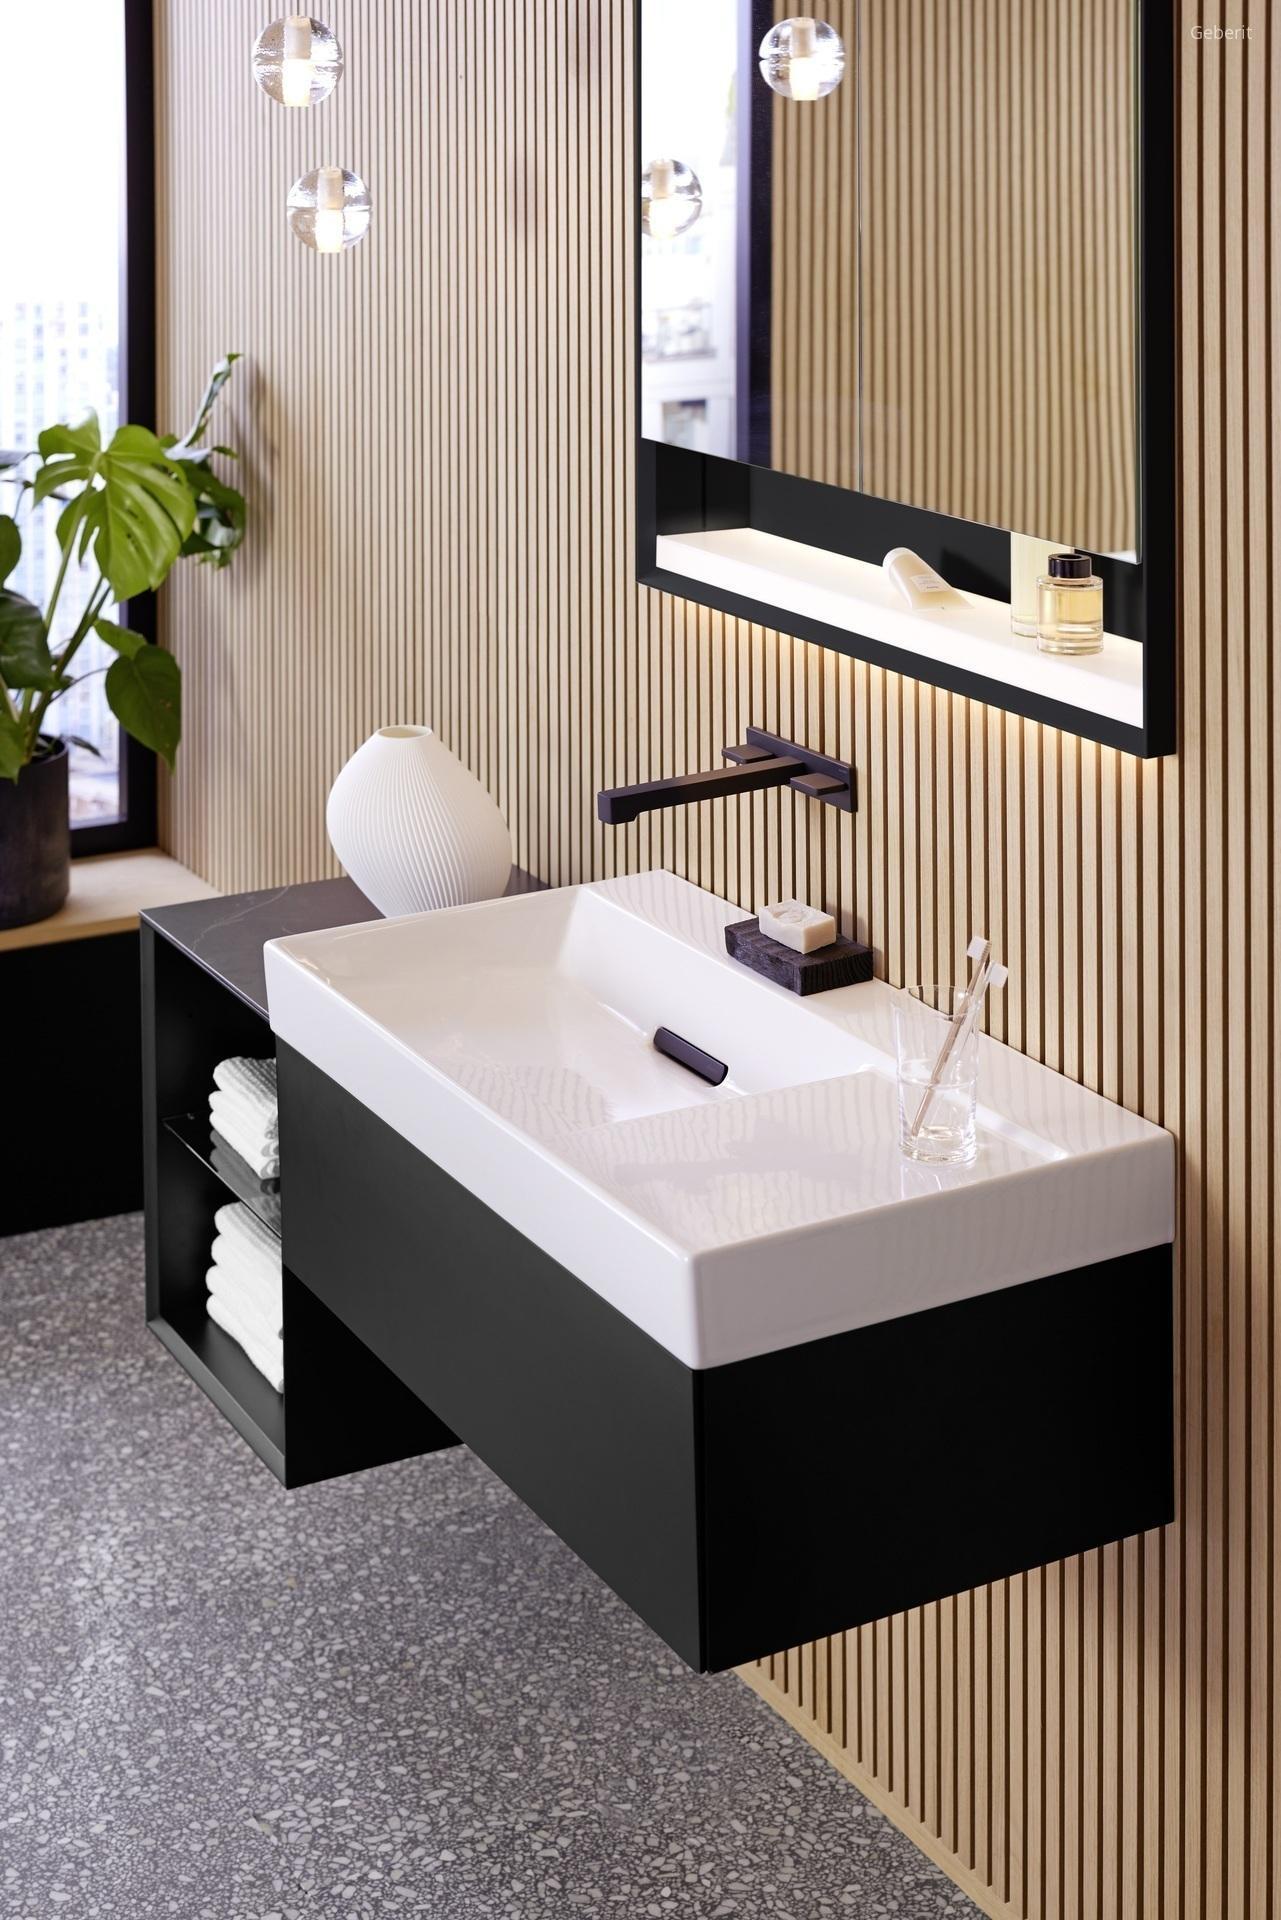 Matt fekete fürdőszobabútor - fürdő / WC ötlet, modern stílusban